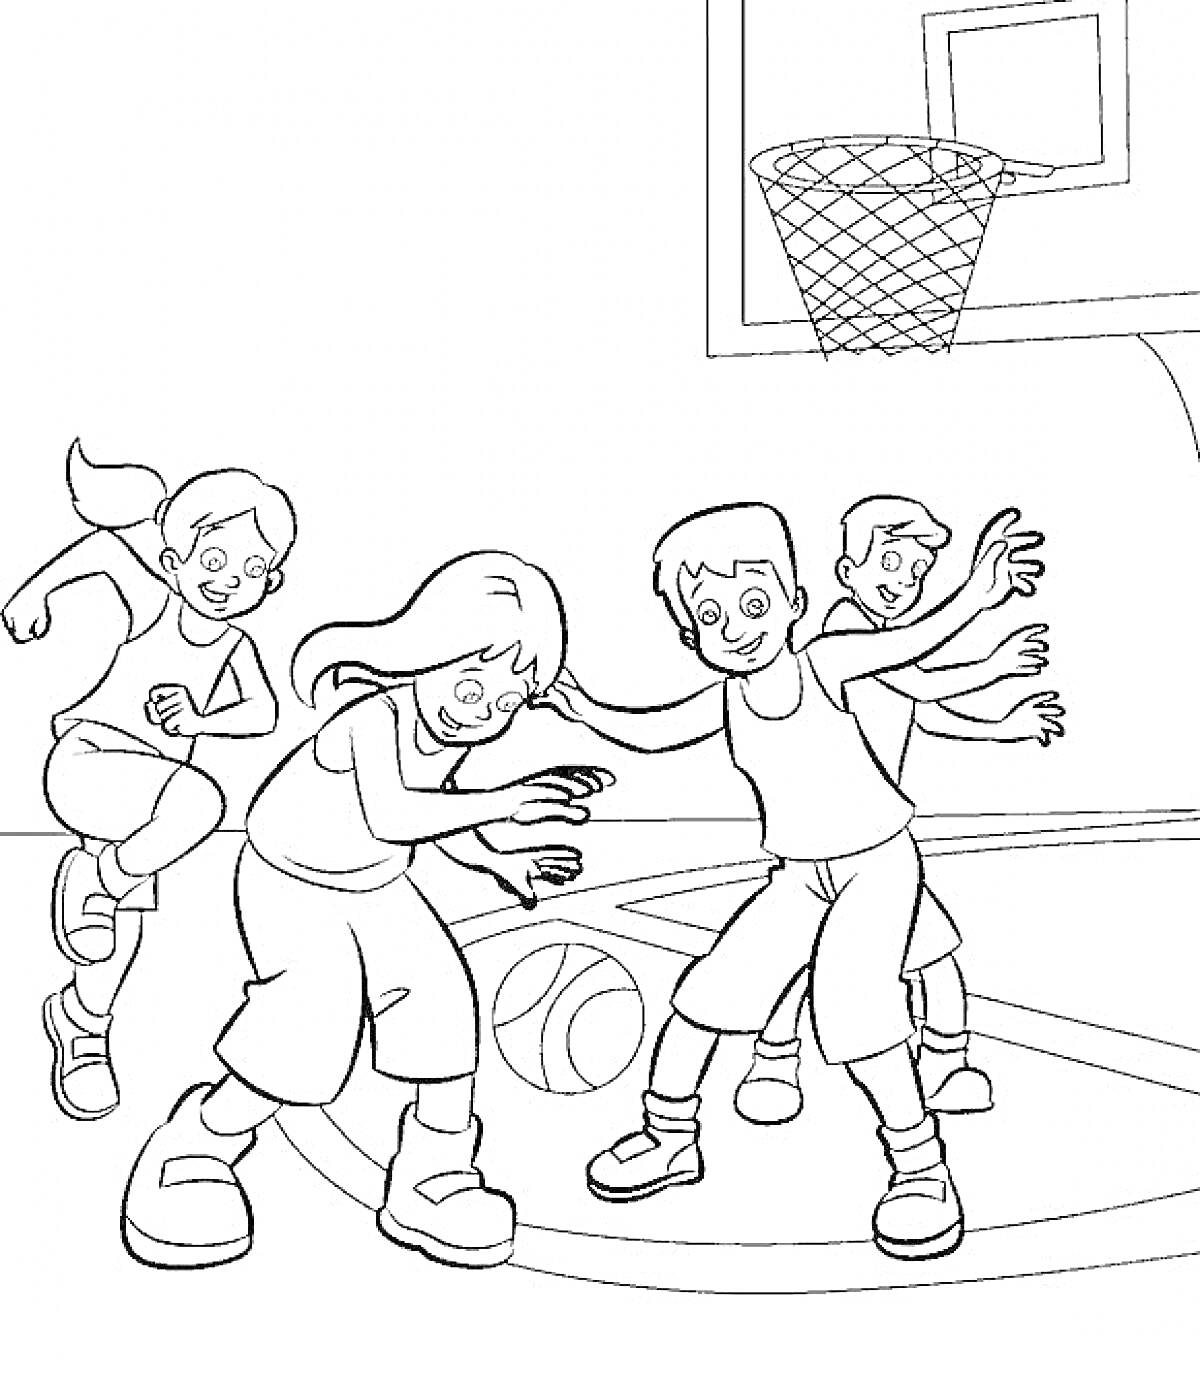 Раскраска Дети играют в баскетбол на спортивной площадке. Мяч, баскетбольное кольцо, четверо детей в спортивной форме.